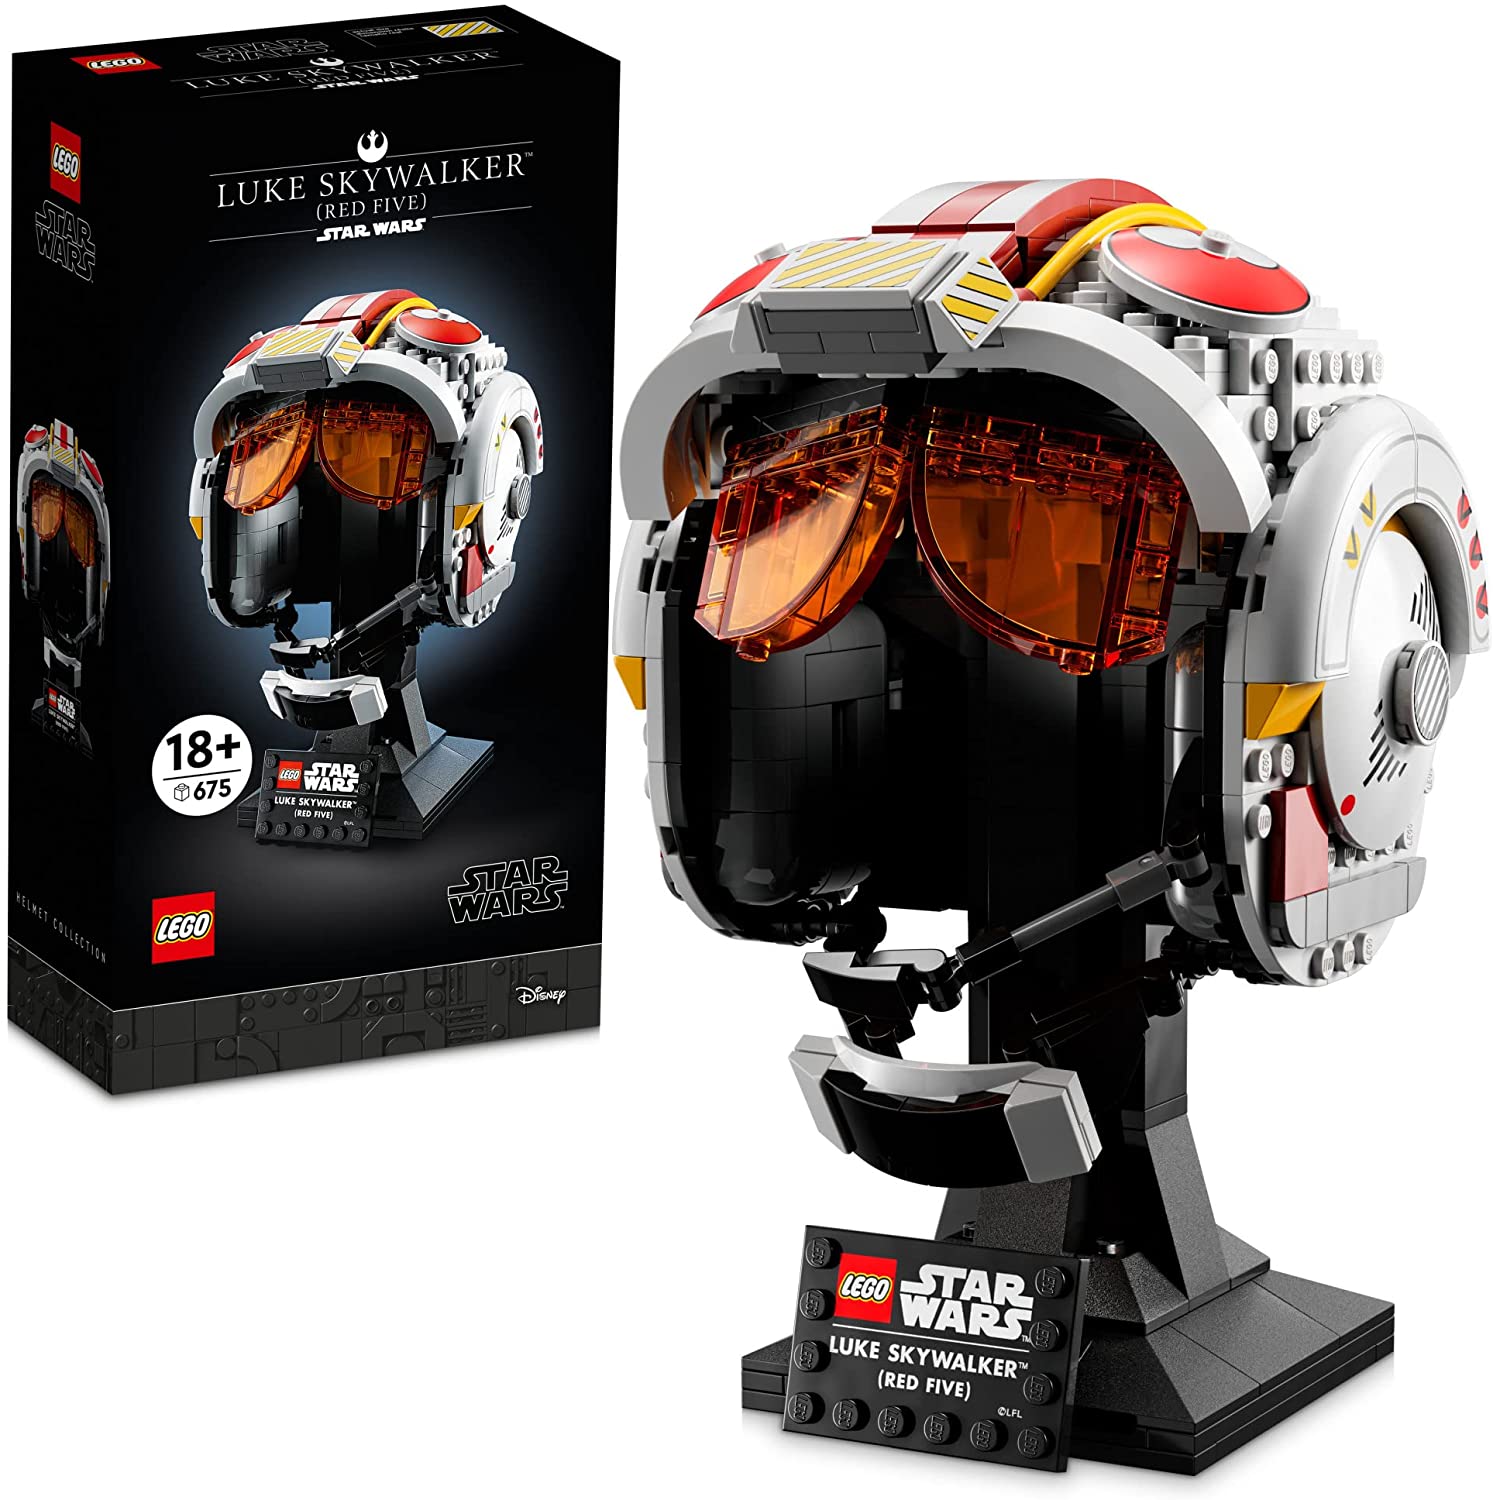 LEGO Star Wars Luke Skywalker's (Red Five) Helmet Set 75327